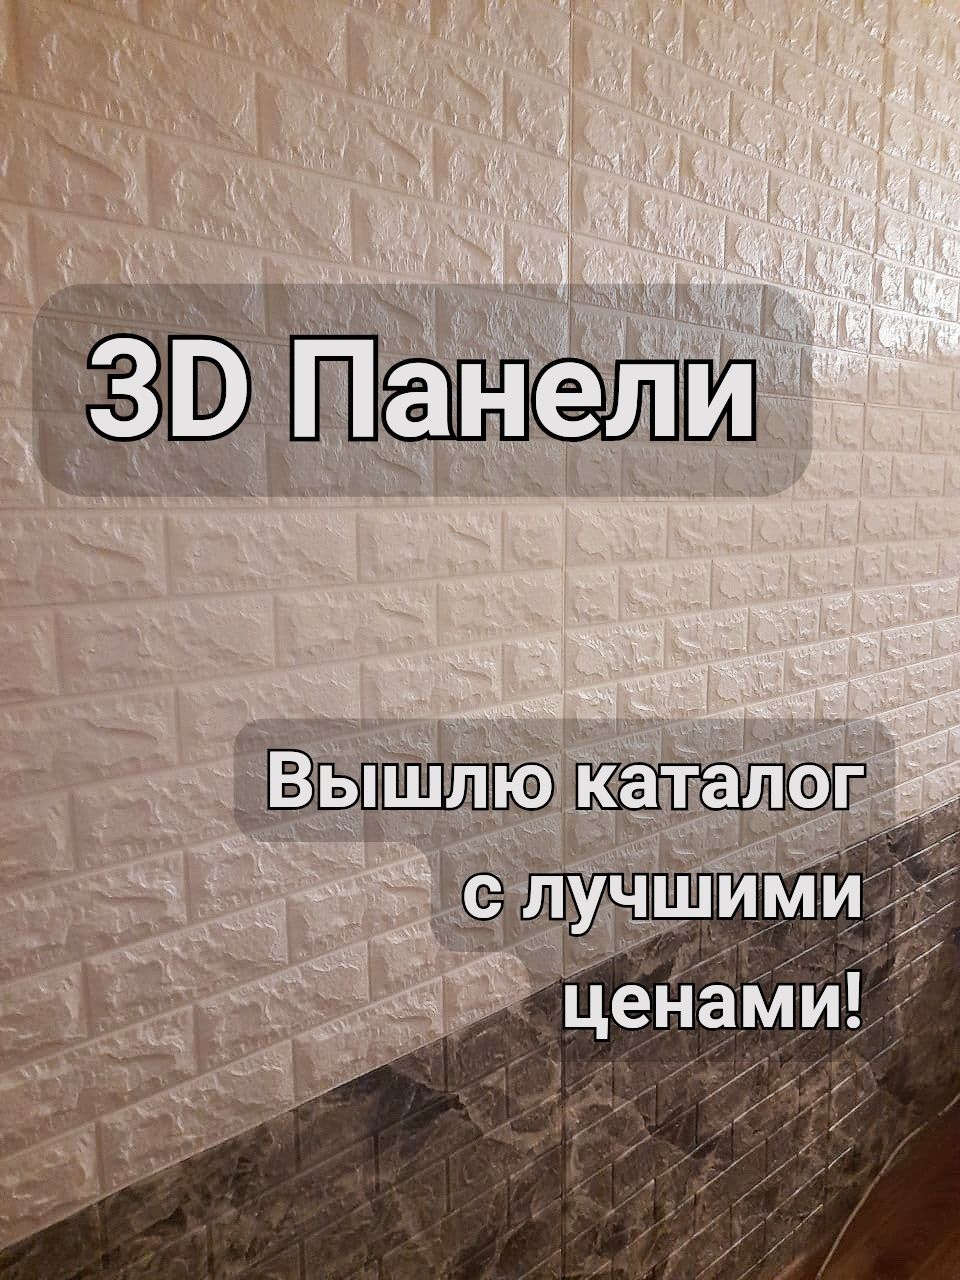 ТОП! 3Д Панели Самоклеющиеся, Кирпич 3D, Мягкие Обои 3д, опт/розн